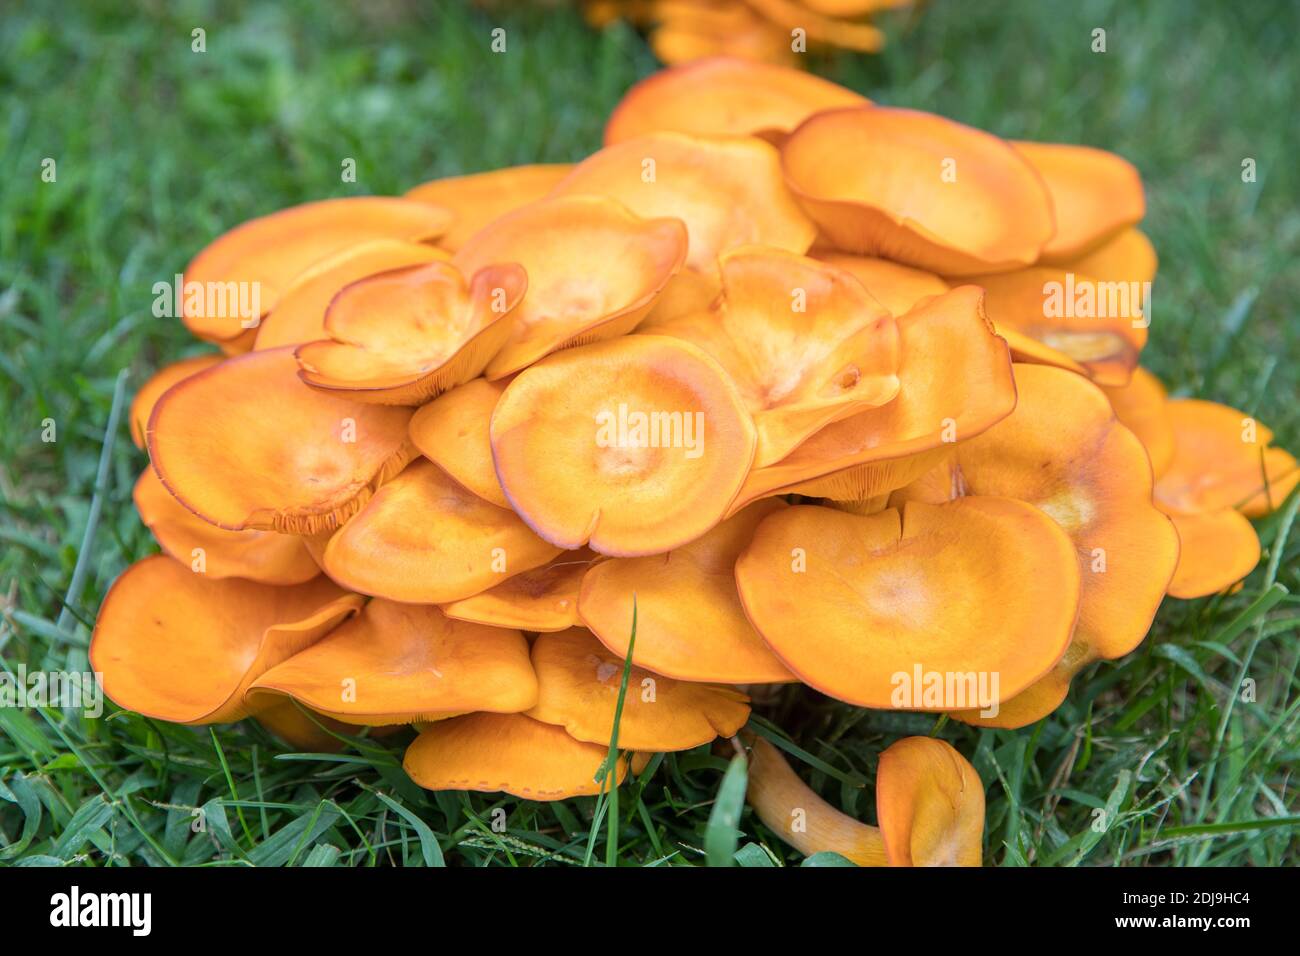 Omphalotus olearius.champignon toxique orange vif, champignon. Bioluminescent. Beaux champignons - image Banque D'Images